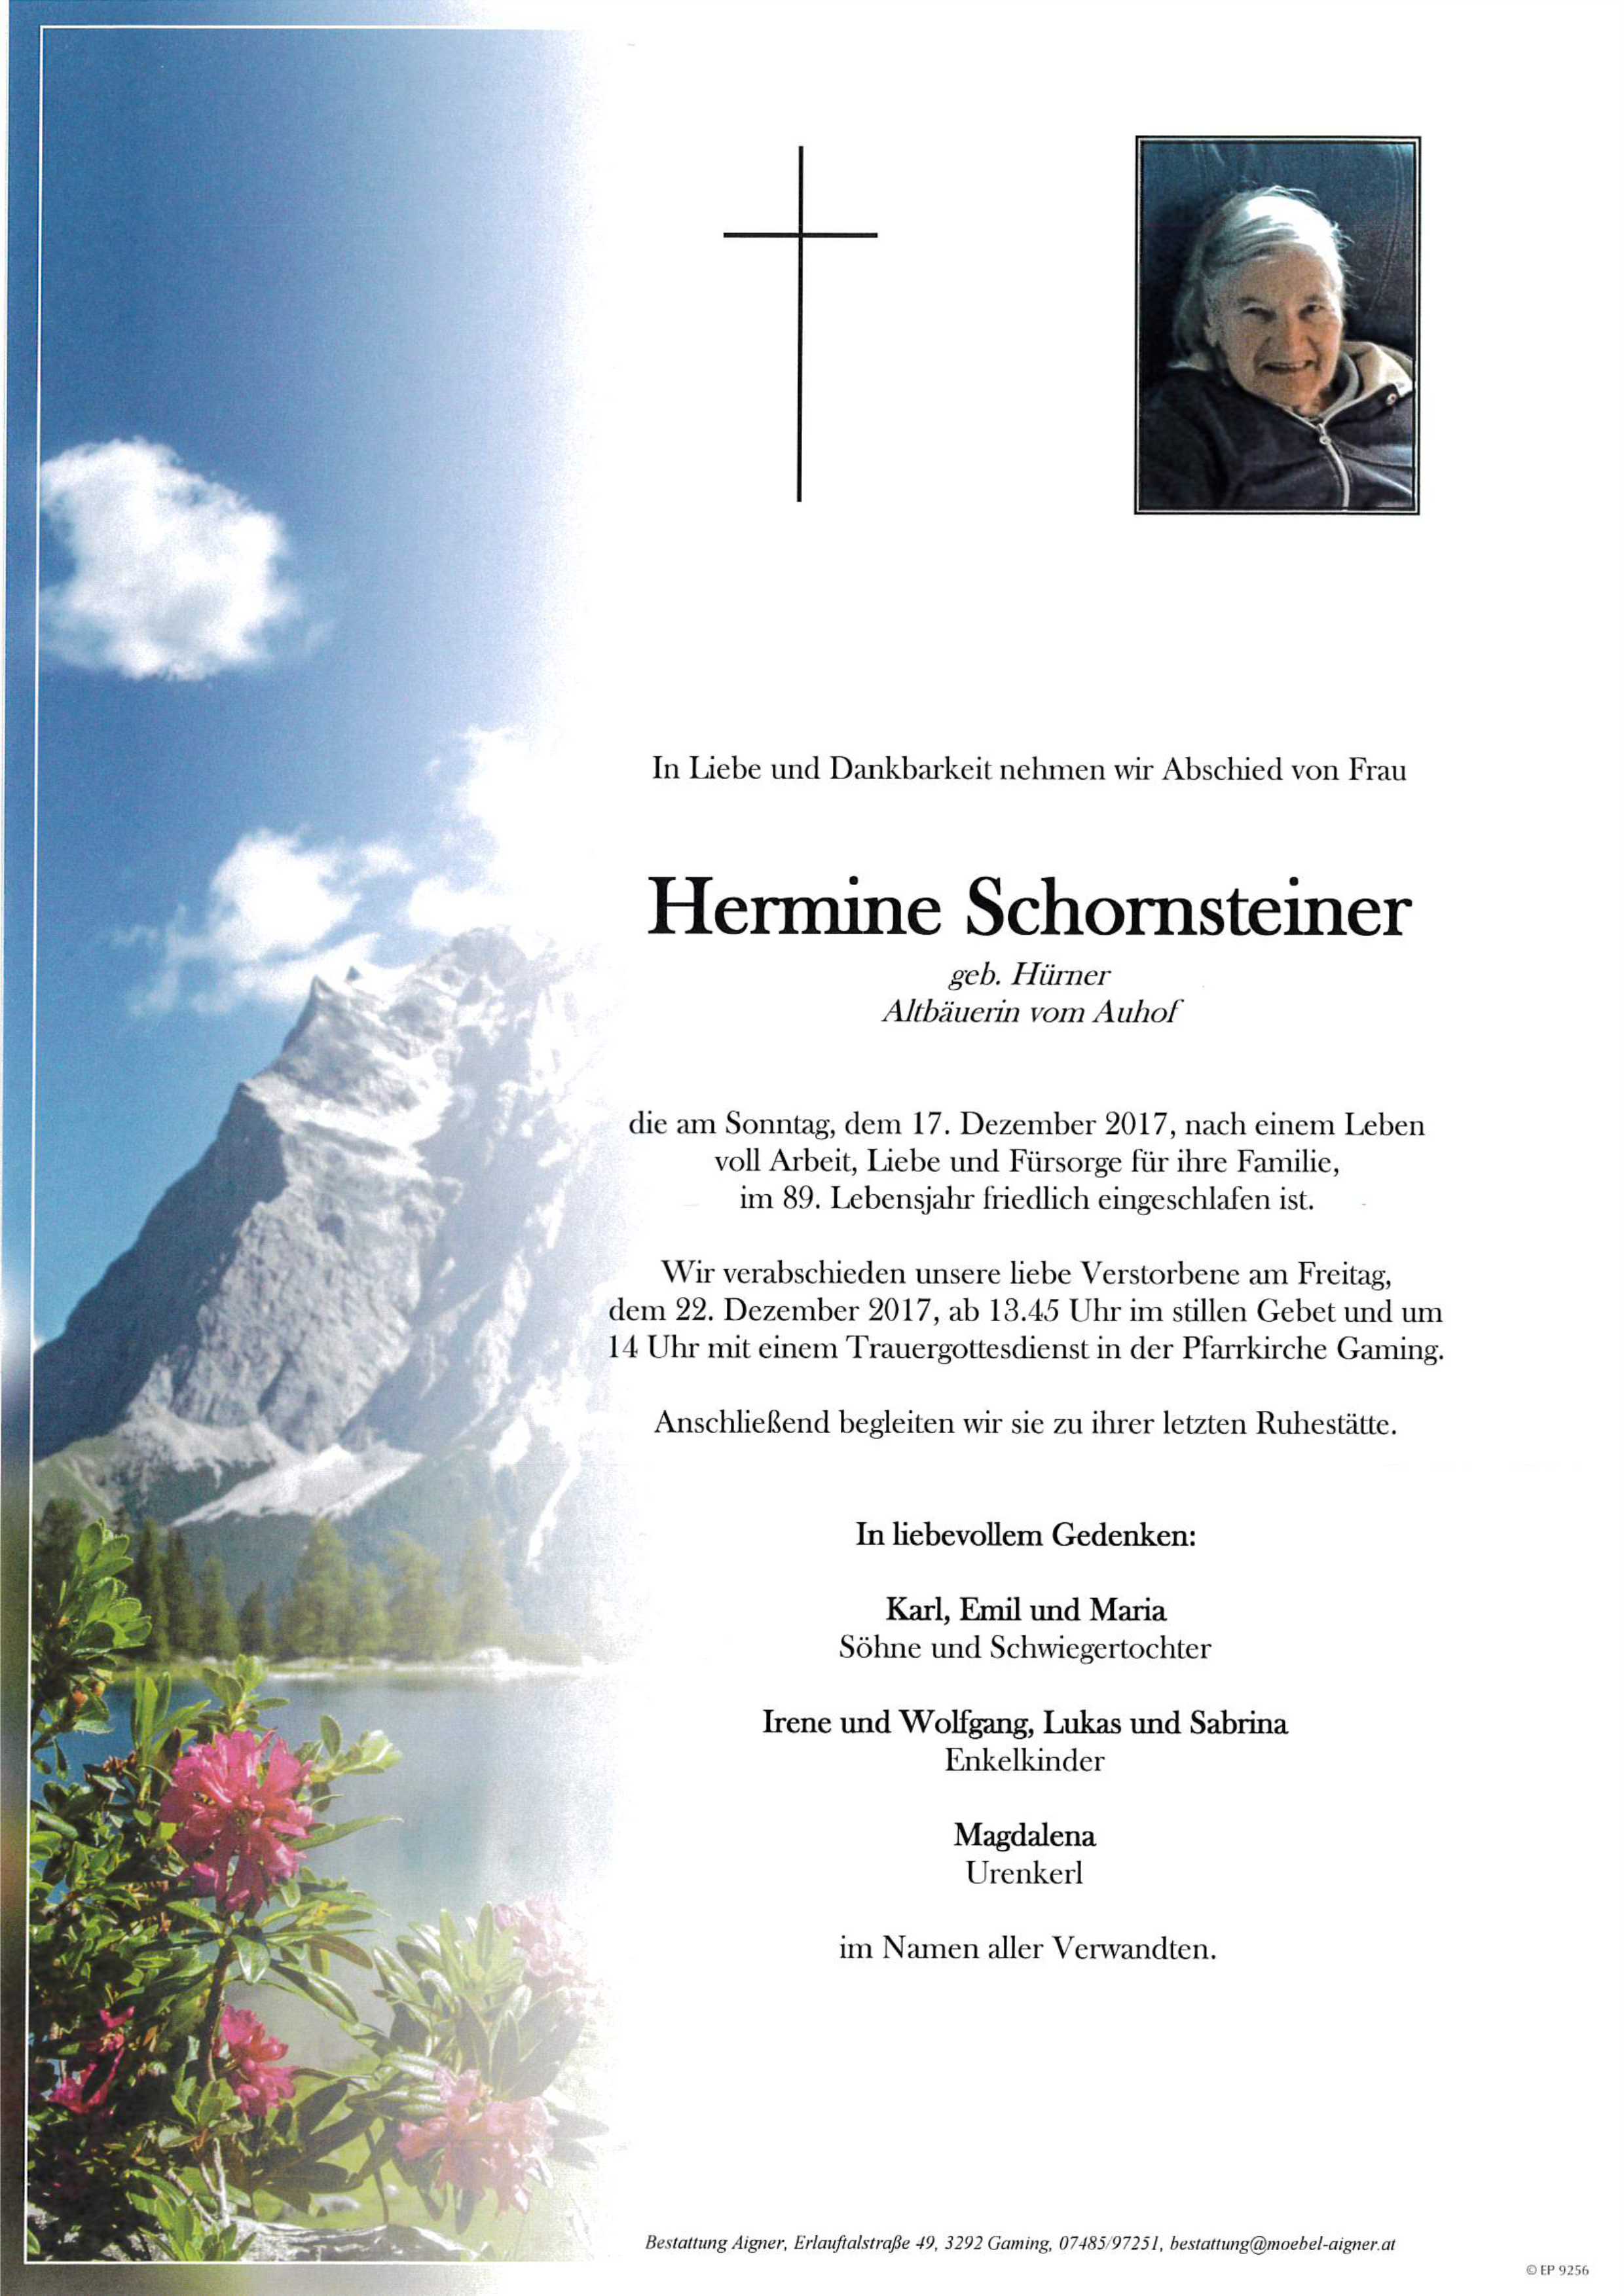 Hermine Schornsteiner